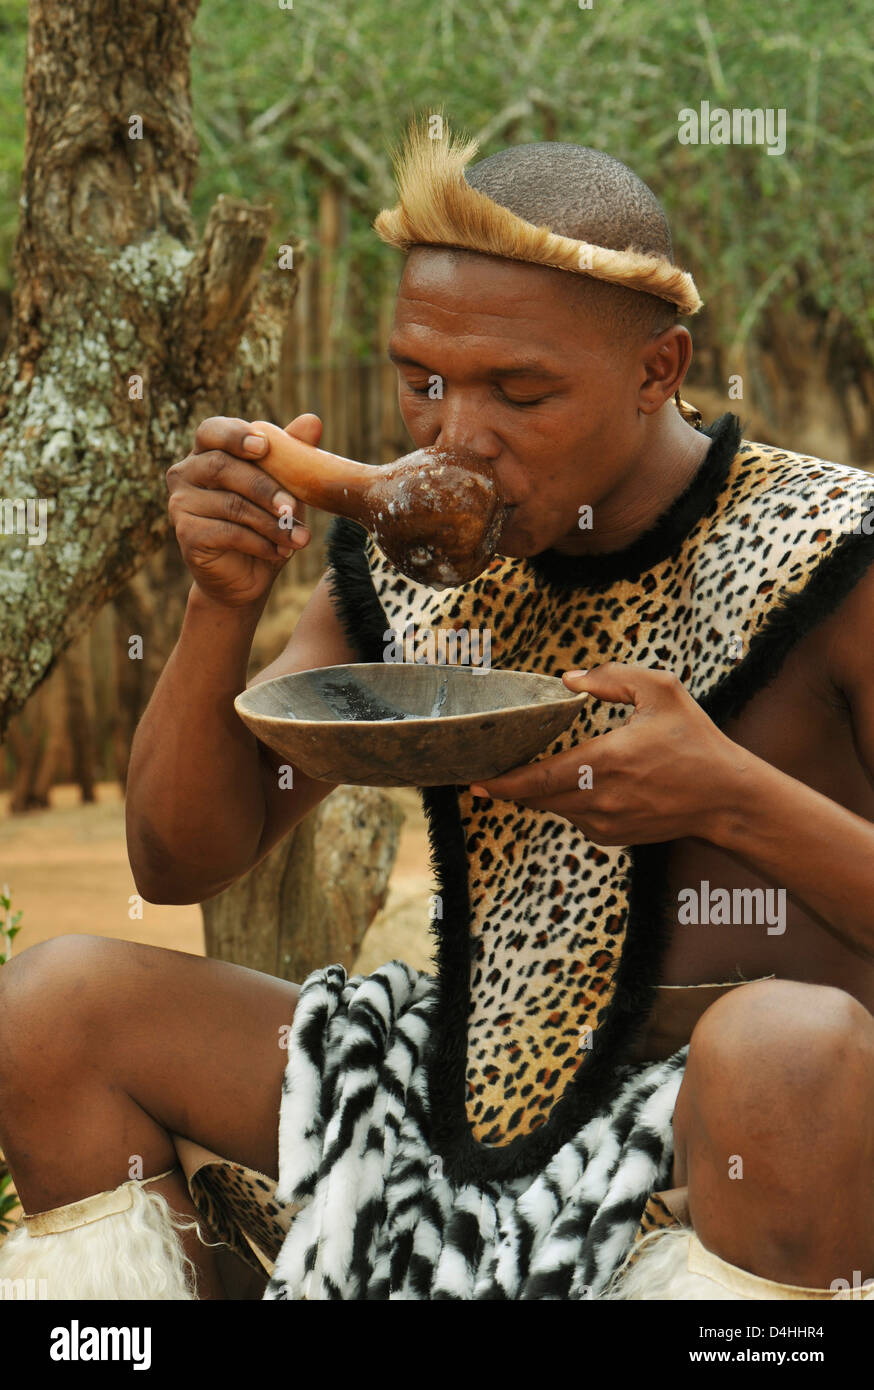 Menschen, Erwachsene Zulu-Mann, der traditionelles afrikanisches Bier aus Kürbis, Shaka Land Themendorf, KwaZulu-Natal, Südafrika, Ethnizität, Kulturen trinkt Stockfoto